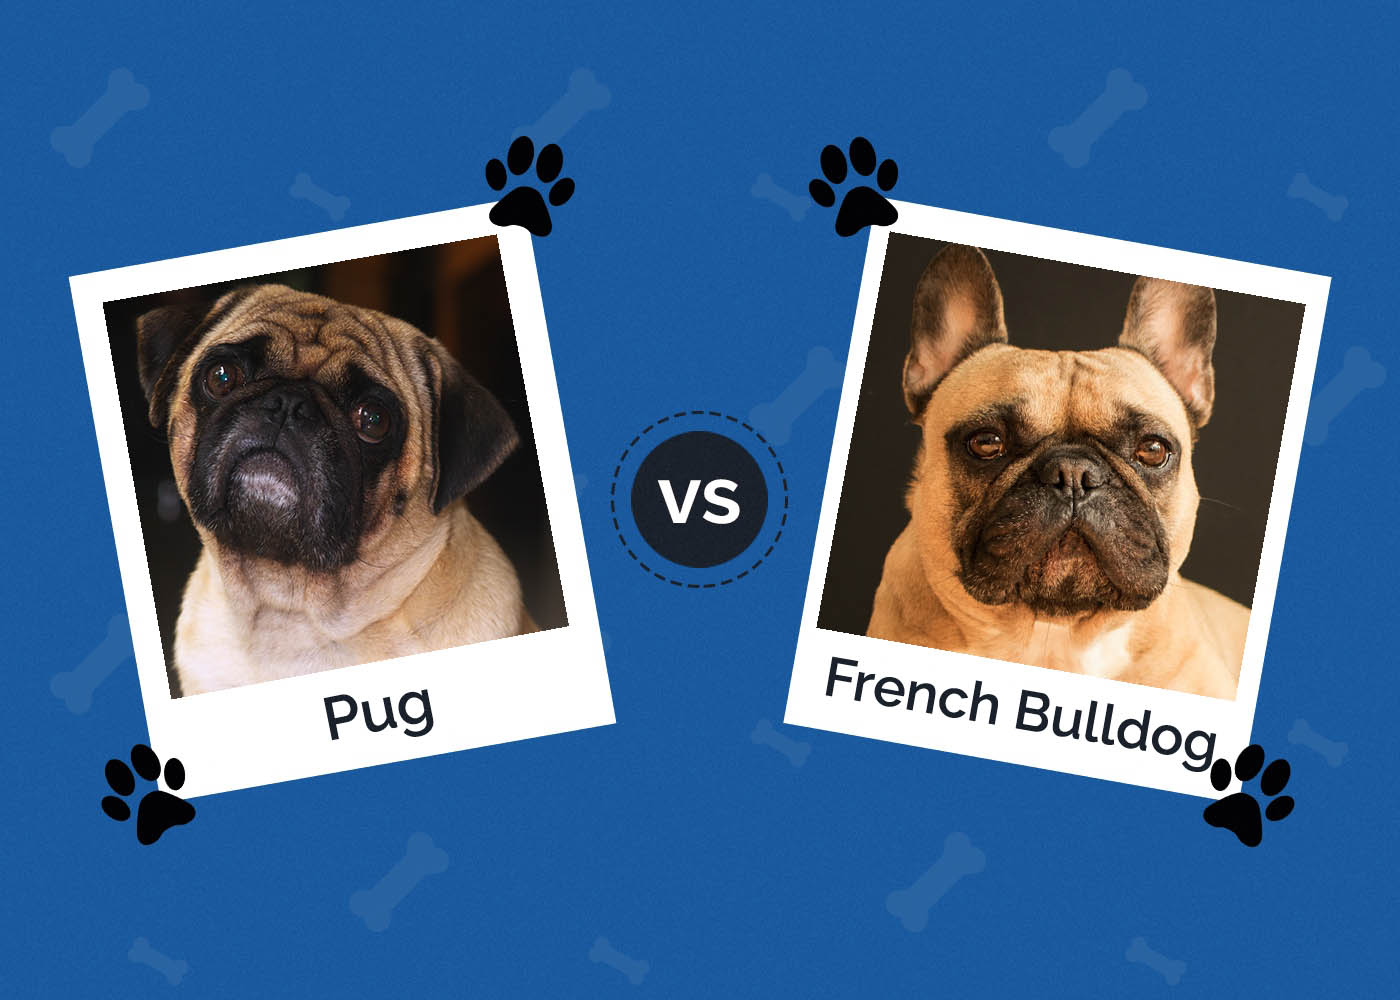 Pug vs French Bulldog